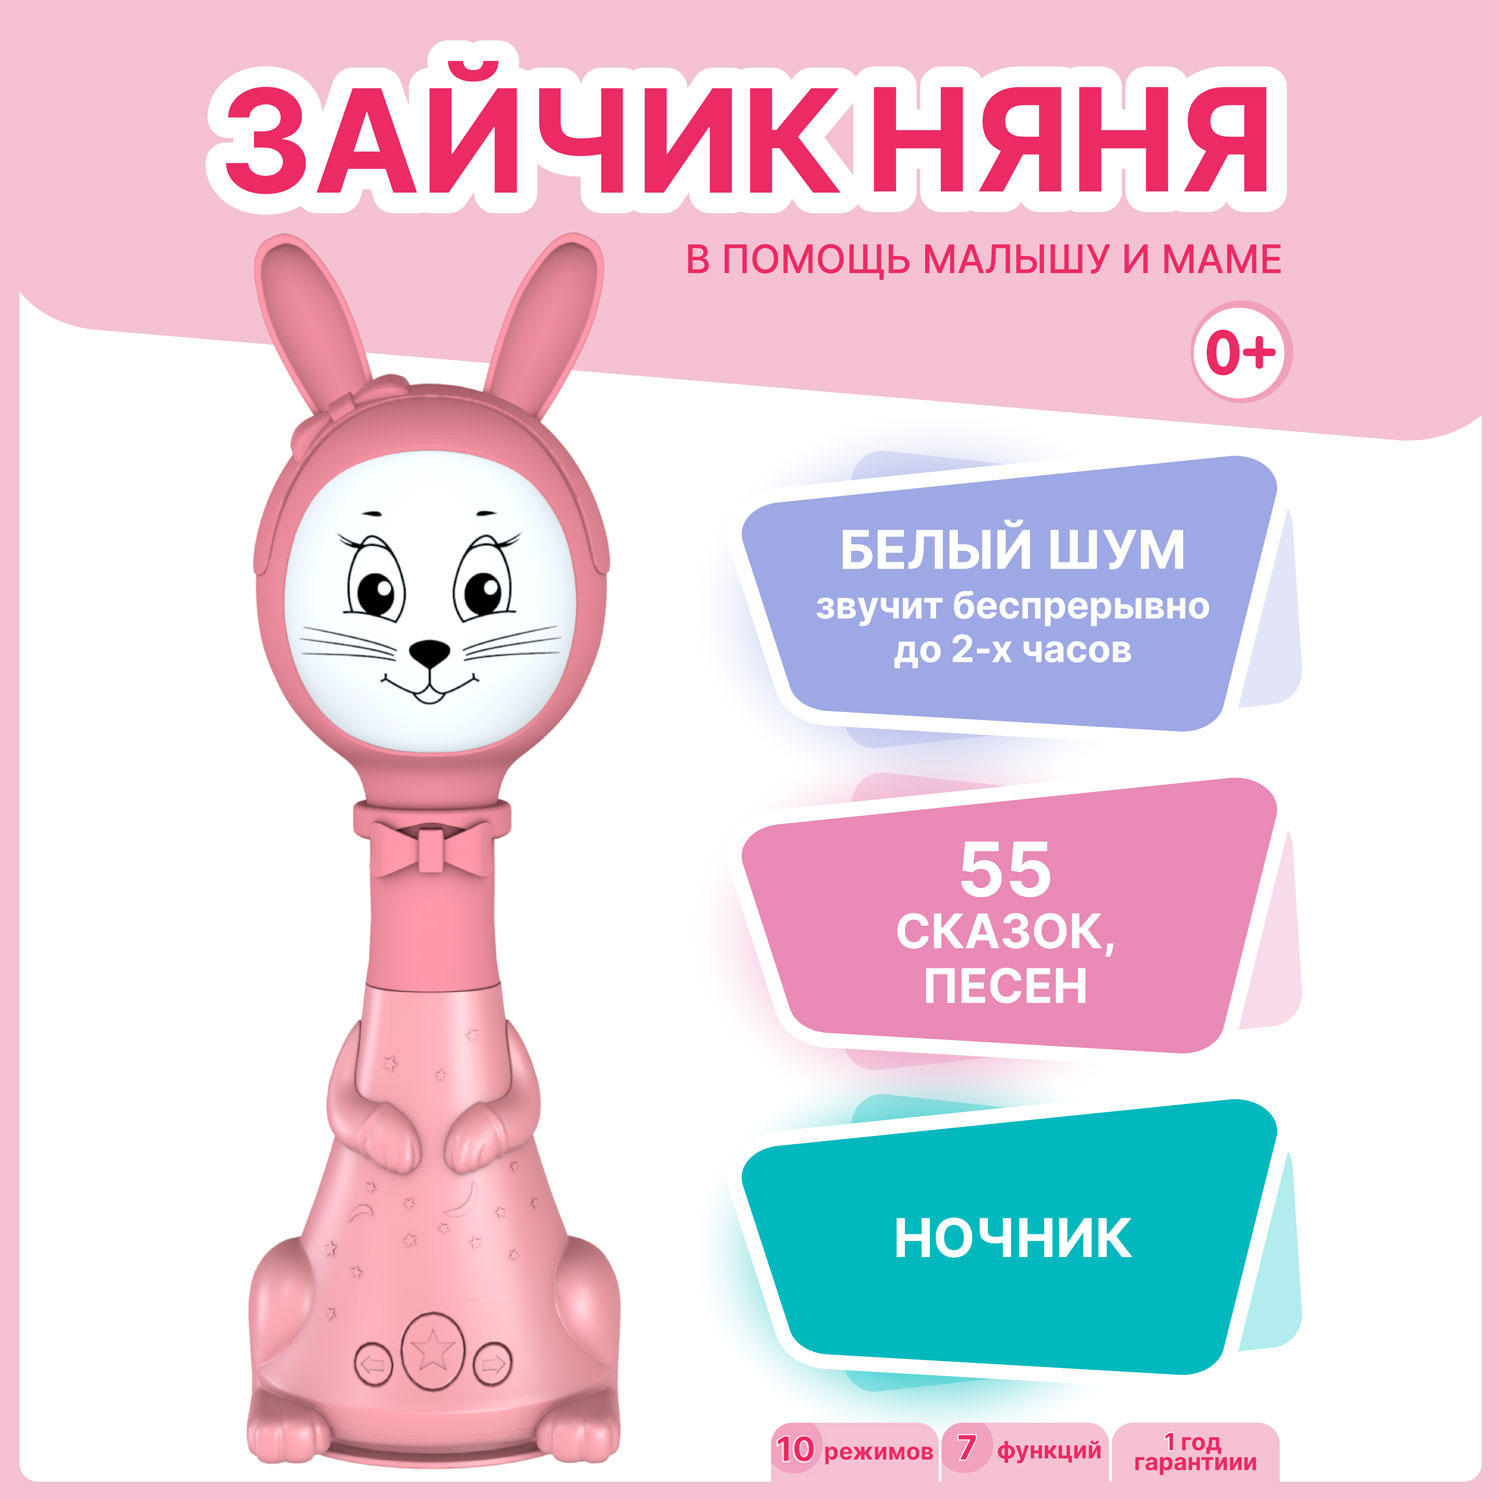 Интерактивная развивающая игрушка для малышей BertToys Зайчик Няня FD125/Розовый развивающая игрушка berttoys зайчик няня pro память 8gb белый шум песни и сказки розовый